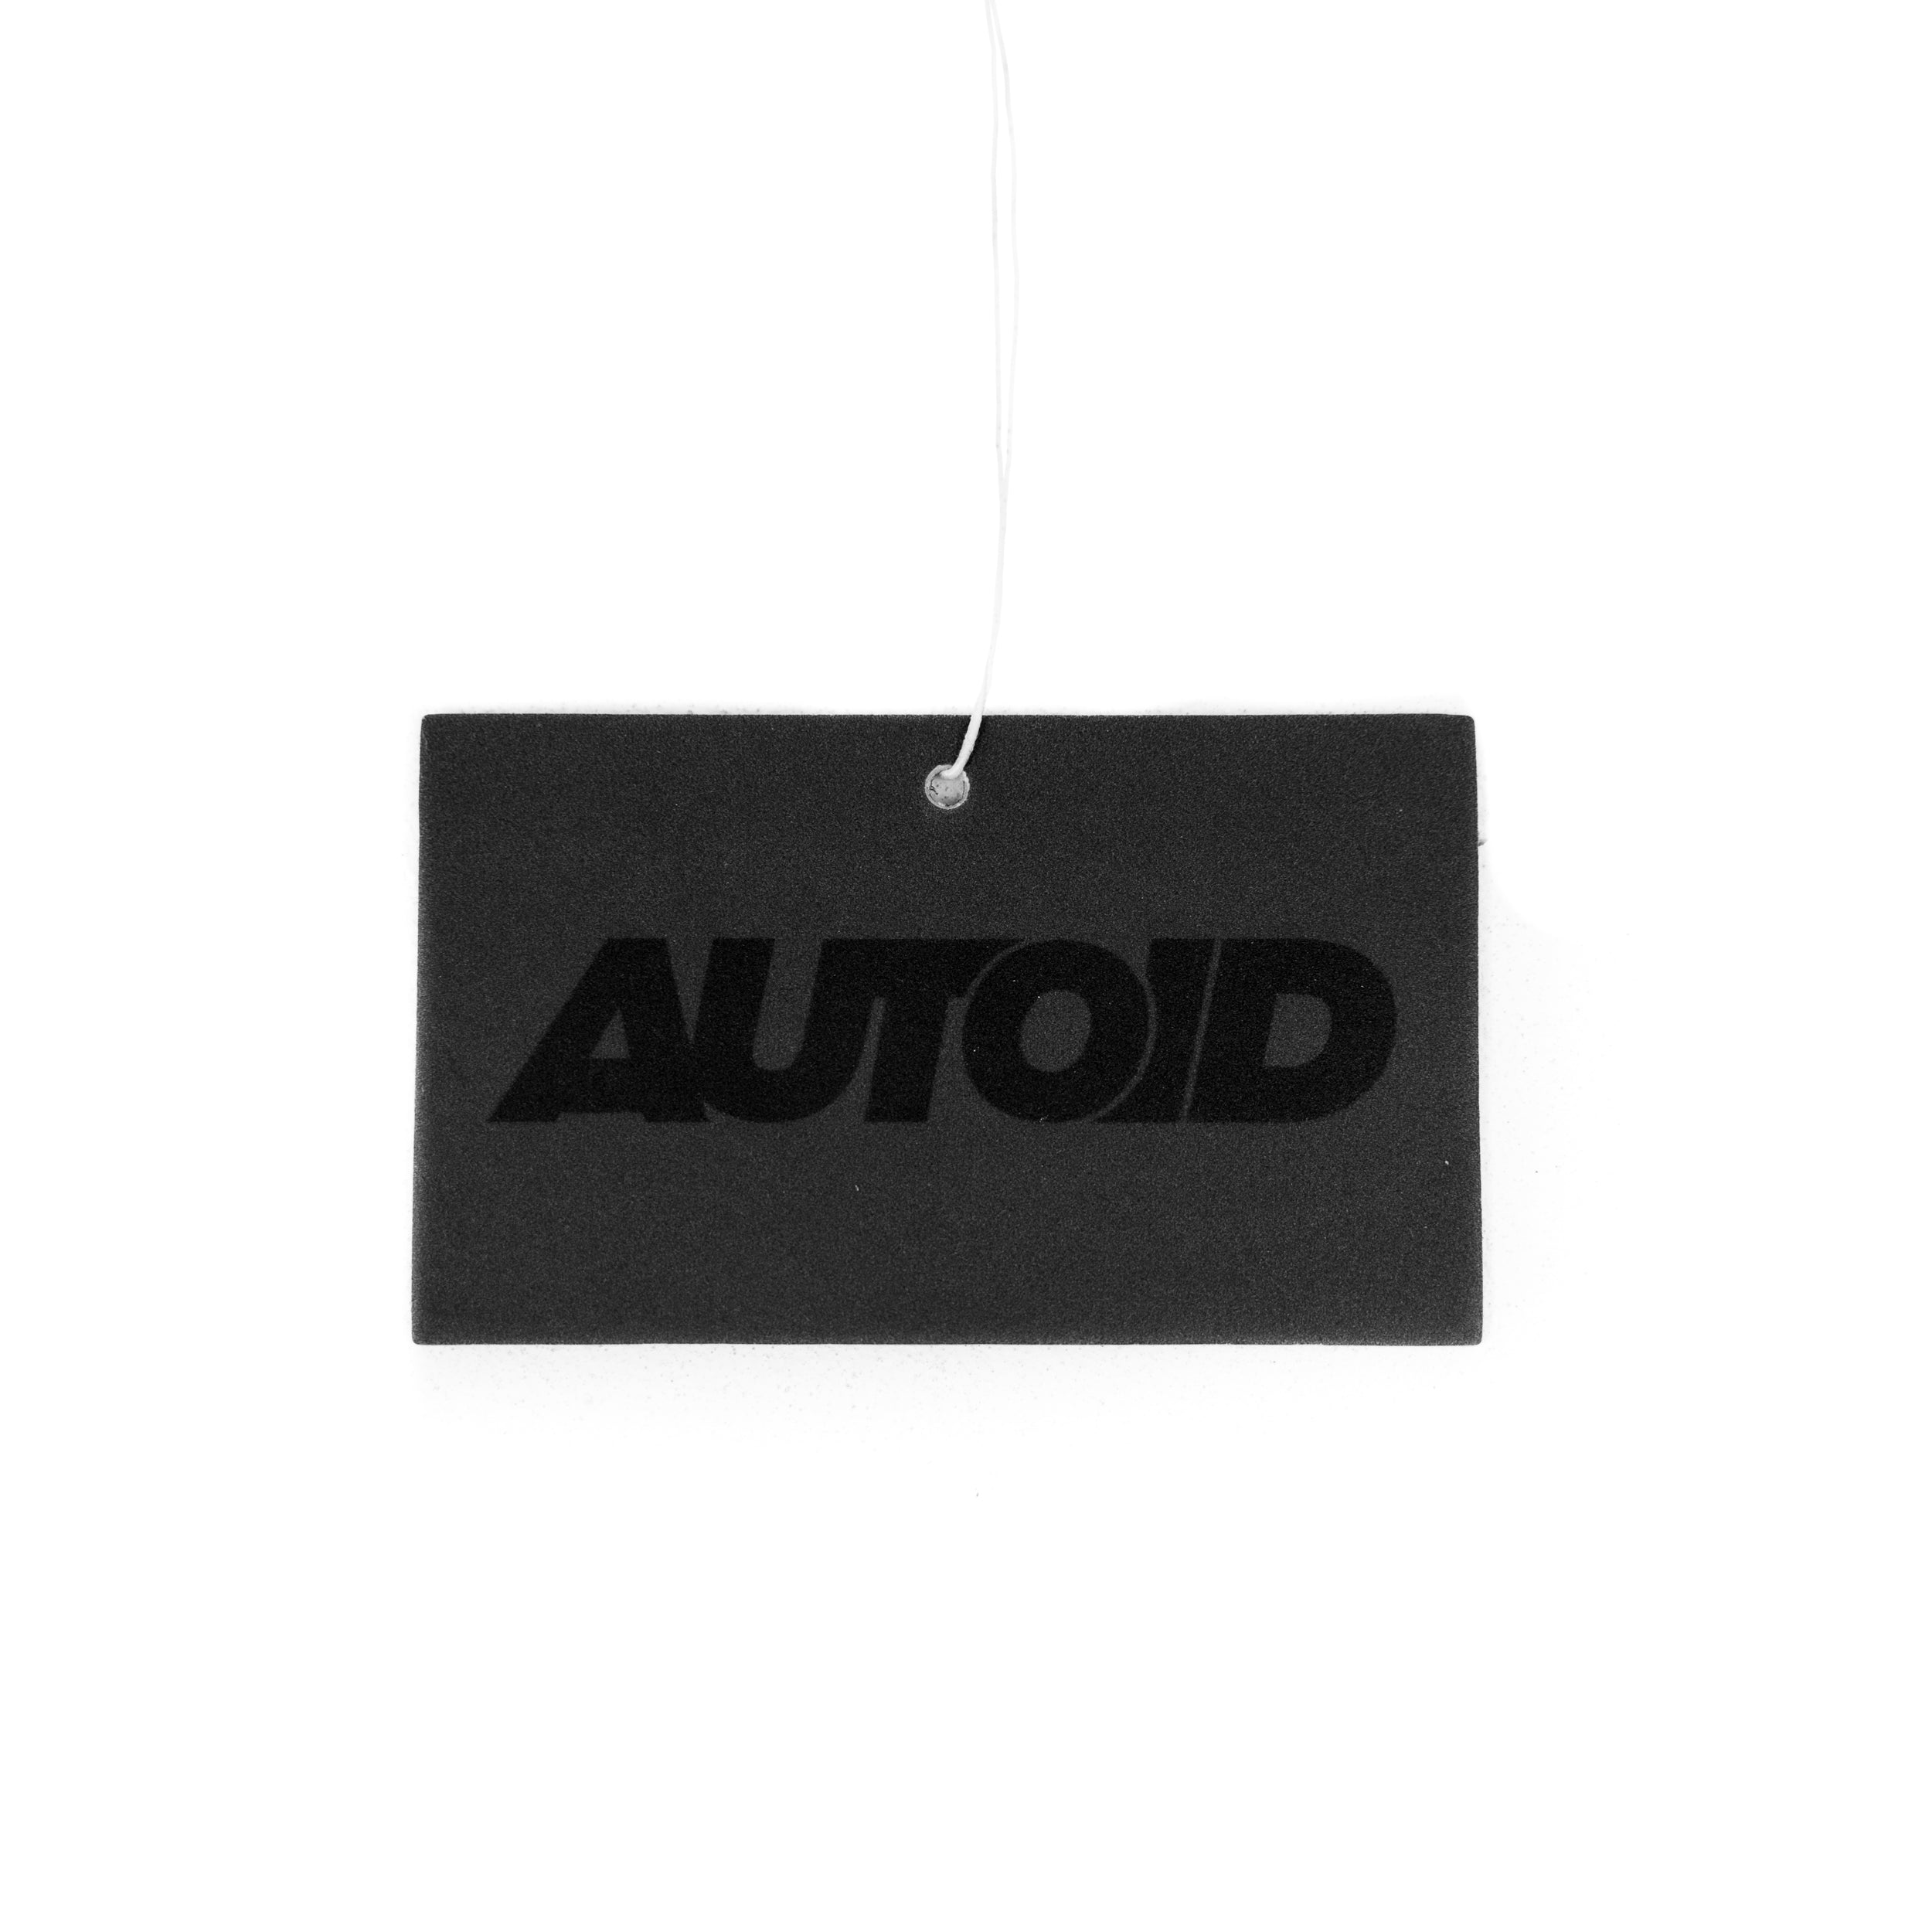 AUTOID Air Freshener by AUTOFresh, Air Fresheners, AUTOFresh - AUTOID | Premium Automotive Accessories